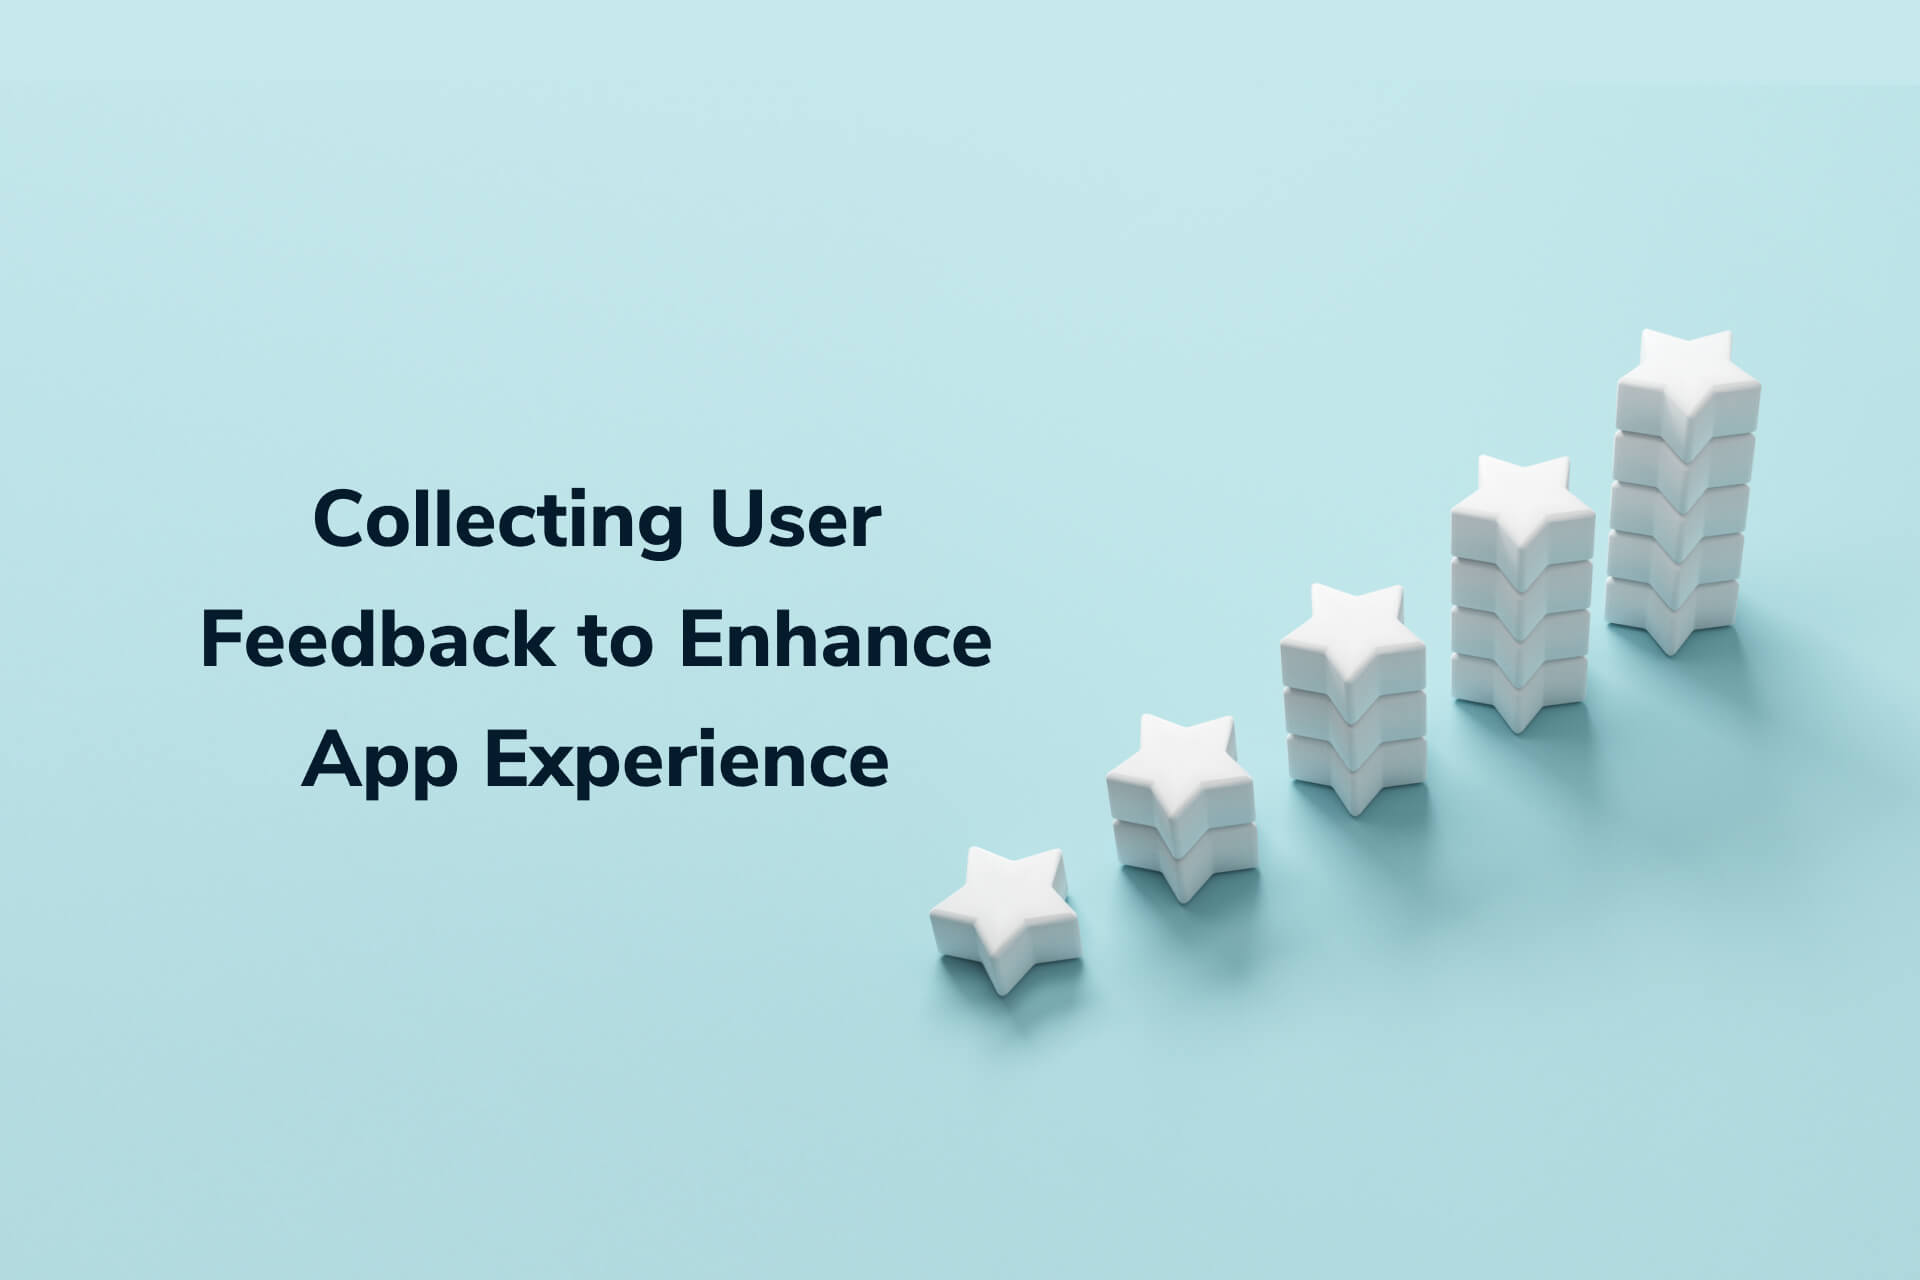 Projeto de feedback de app móvel